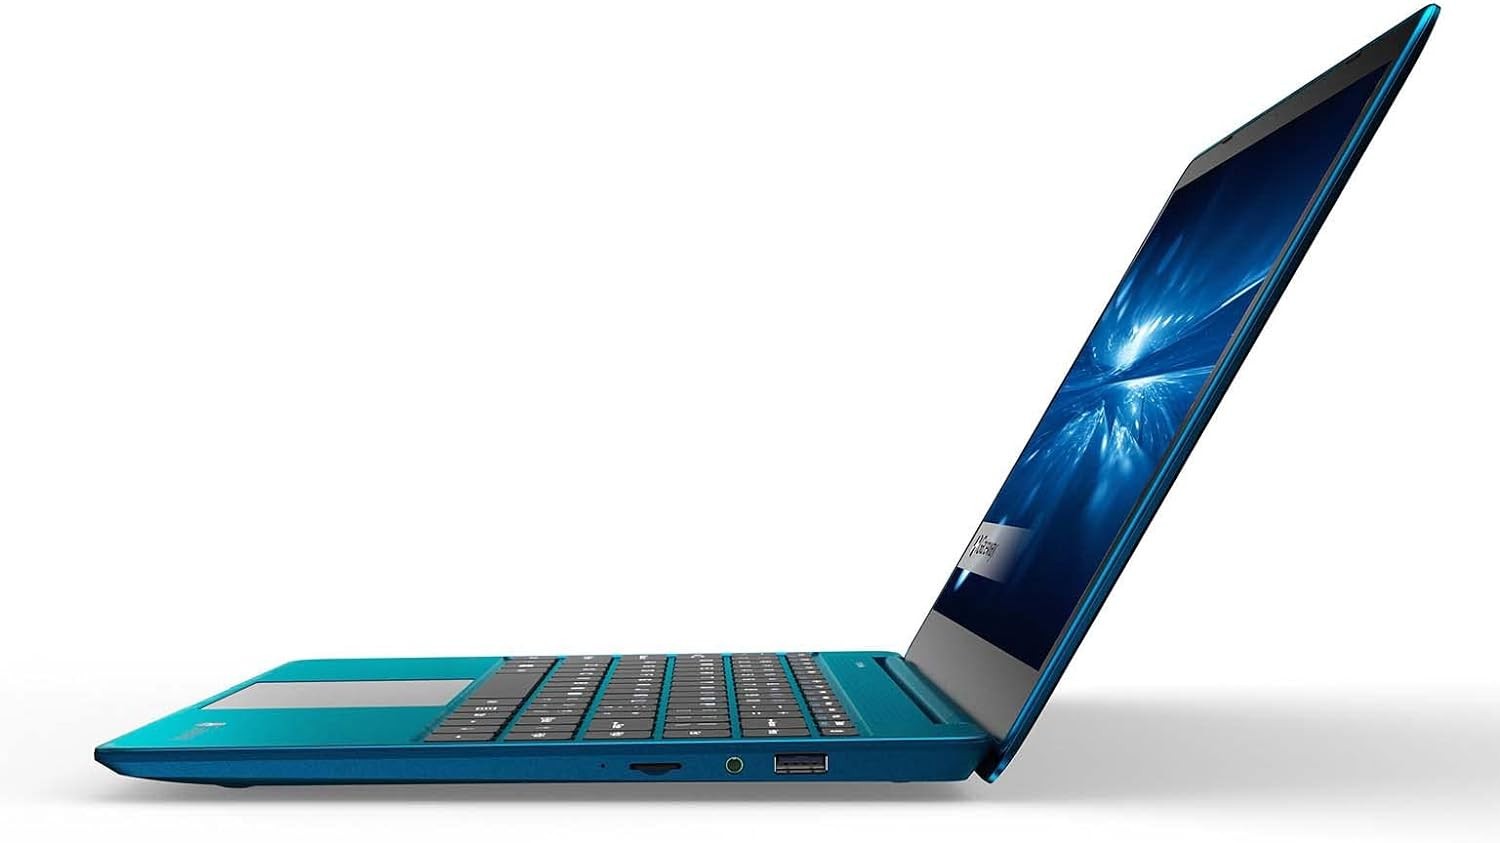 computadoras y laptops - Laptop Gateway FHD de 14.1" en azul i5-1135G7, 16GB RAM, 512gb de almacenamiento 0